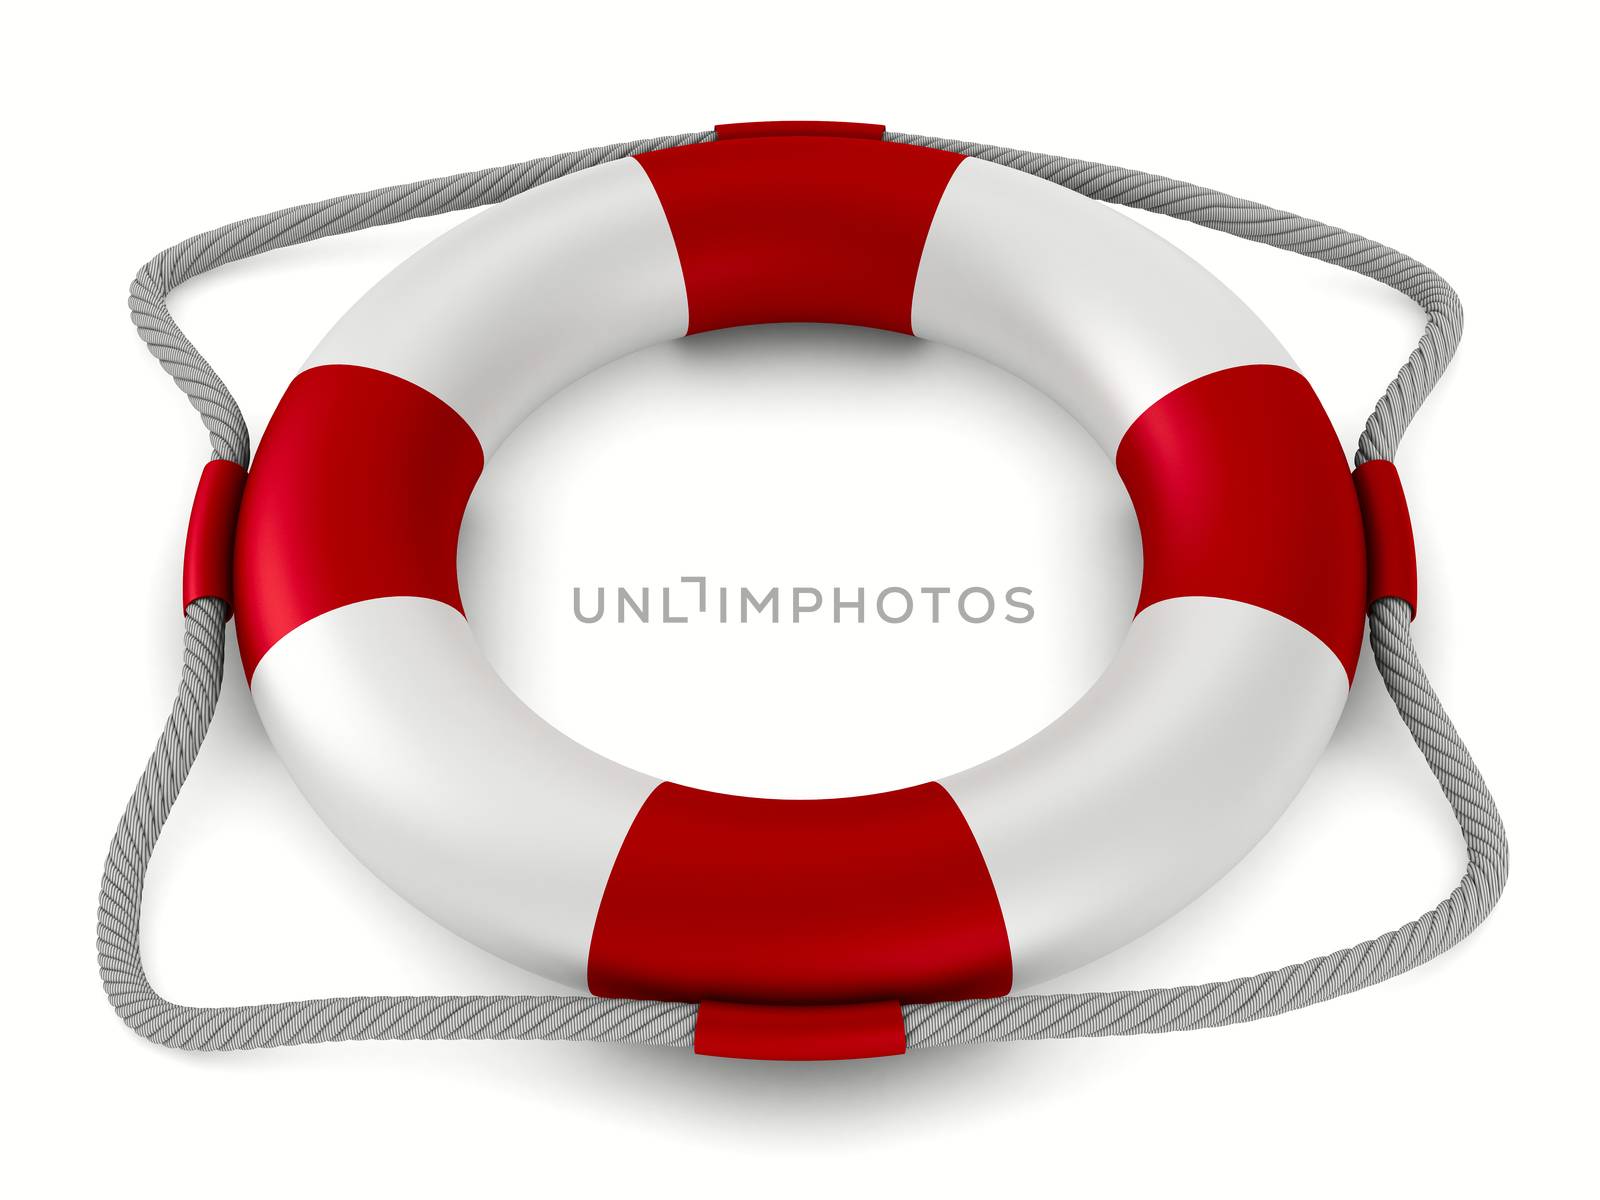 lifebuoy on white background. Isolated 3D image by ISerg